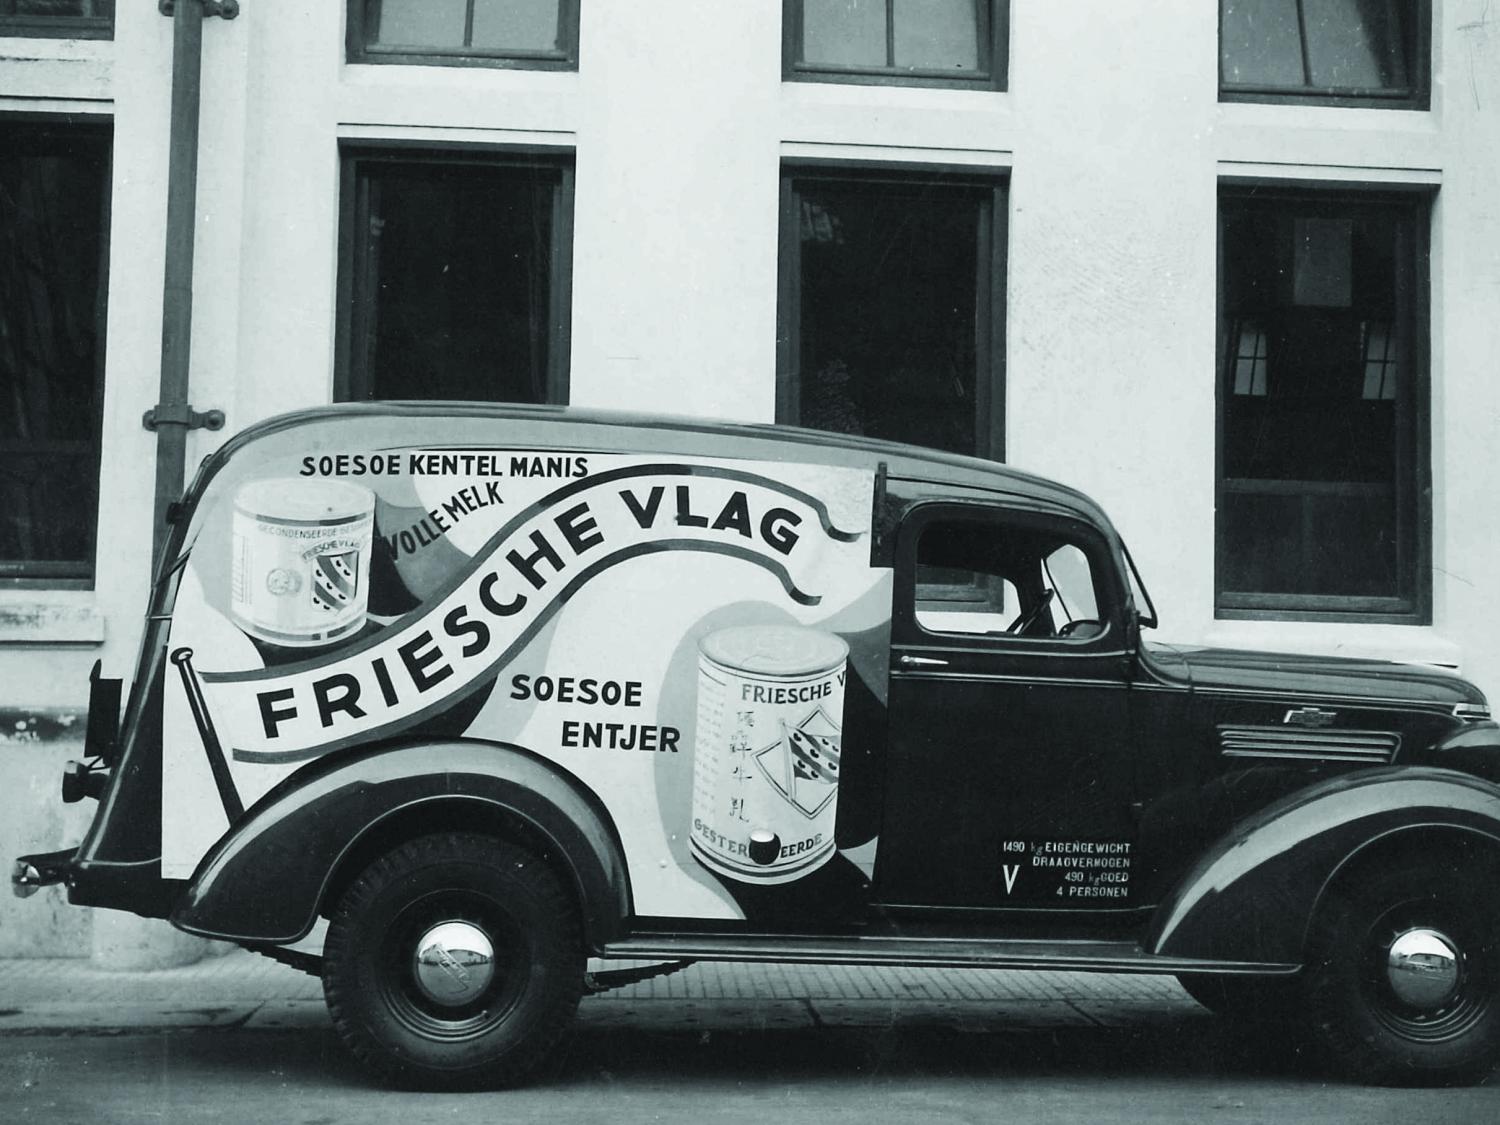 Image of a Friesche Vlag truck